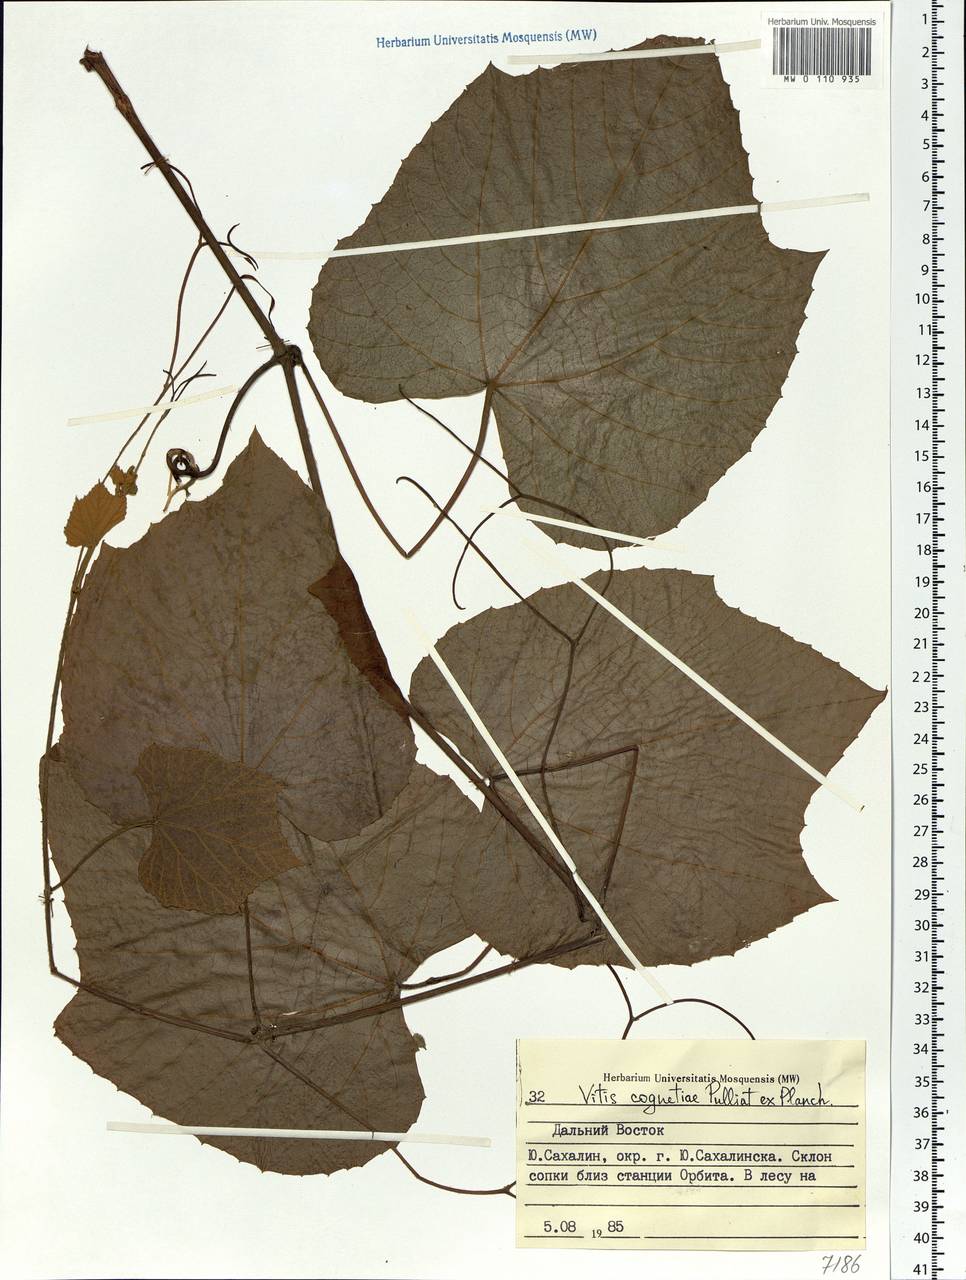 Vitis coignetiae Pulliat ex Planch., Siberia, Russian Far East (S6) (Russia)